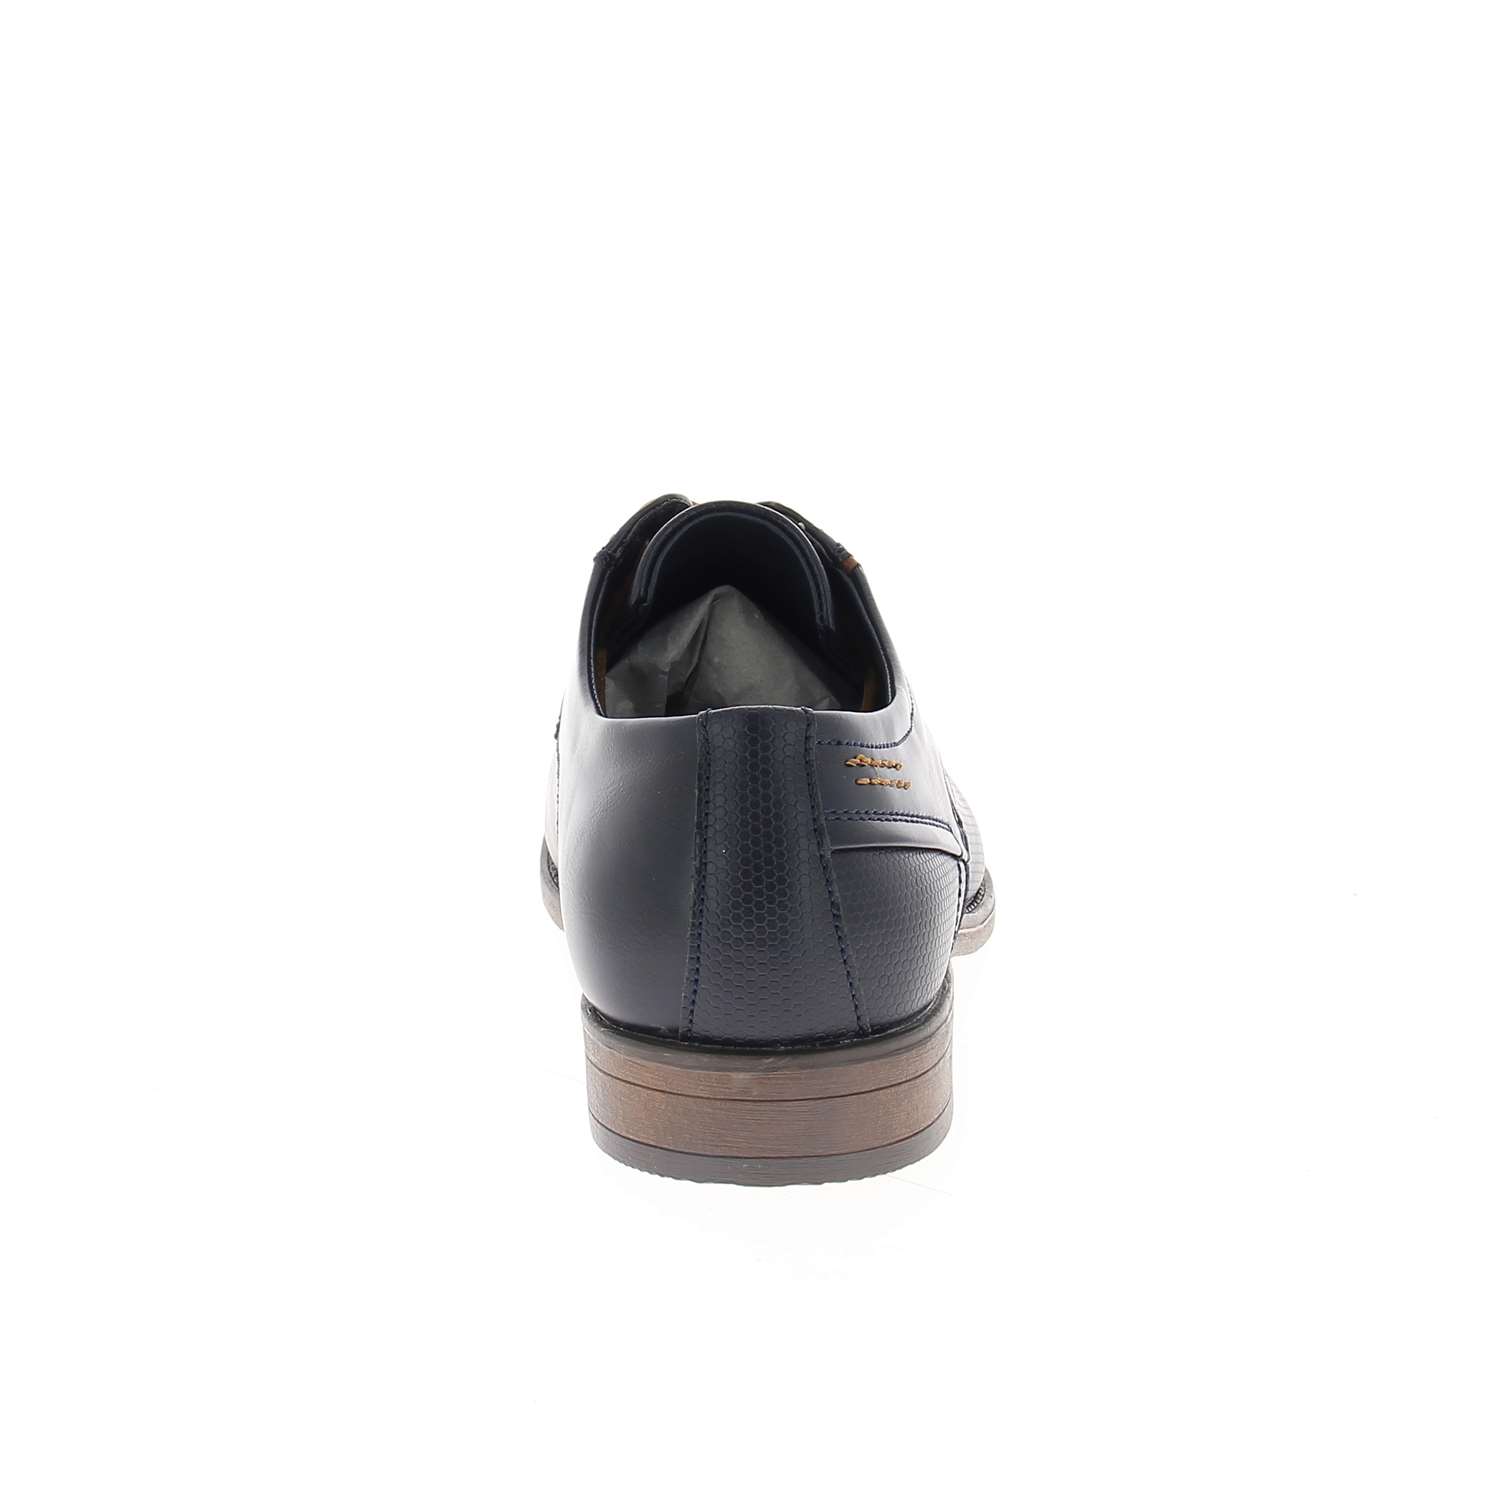 04 - KERBOL - XAPI - Chaussures à lacets - Textile